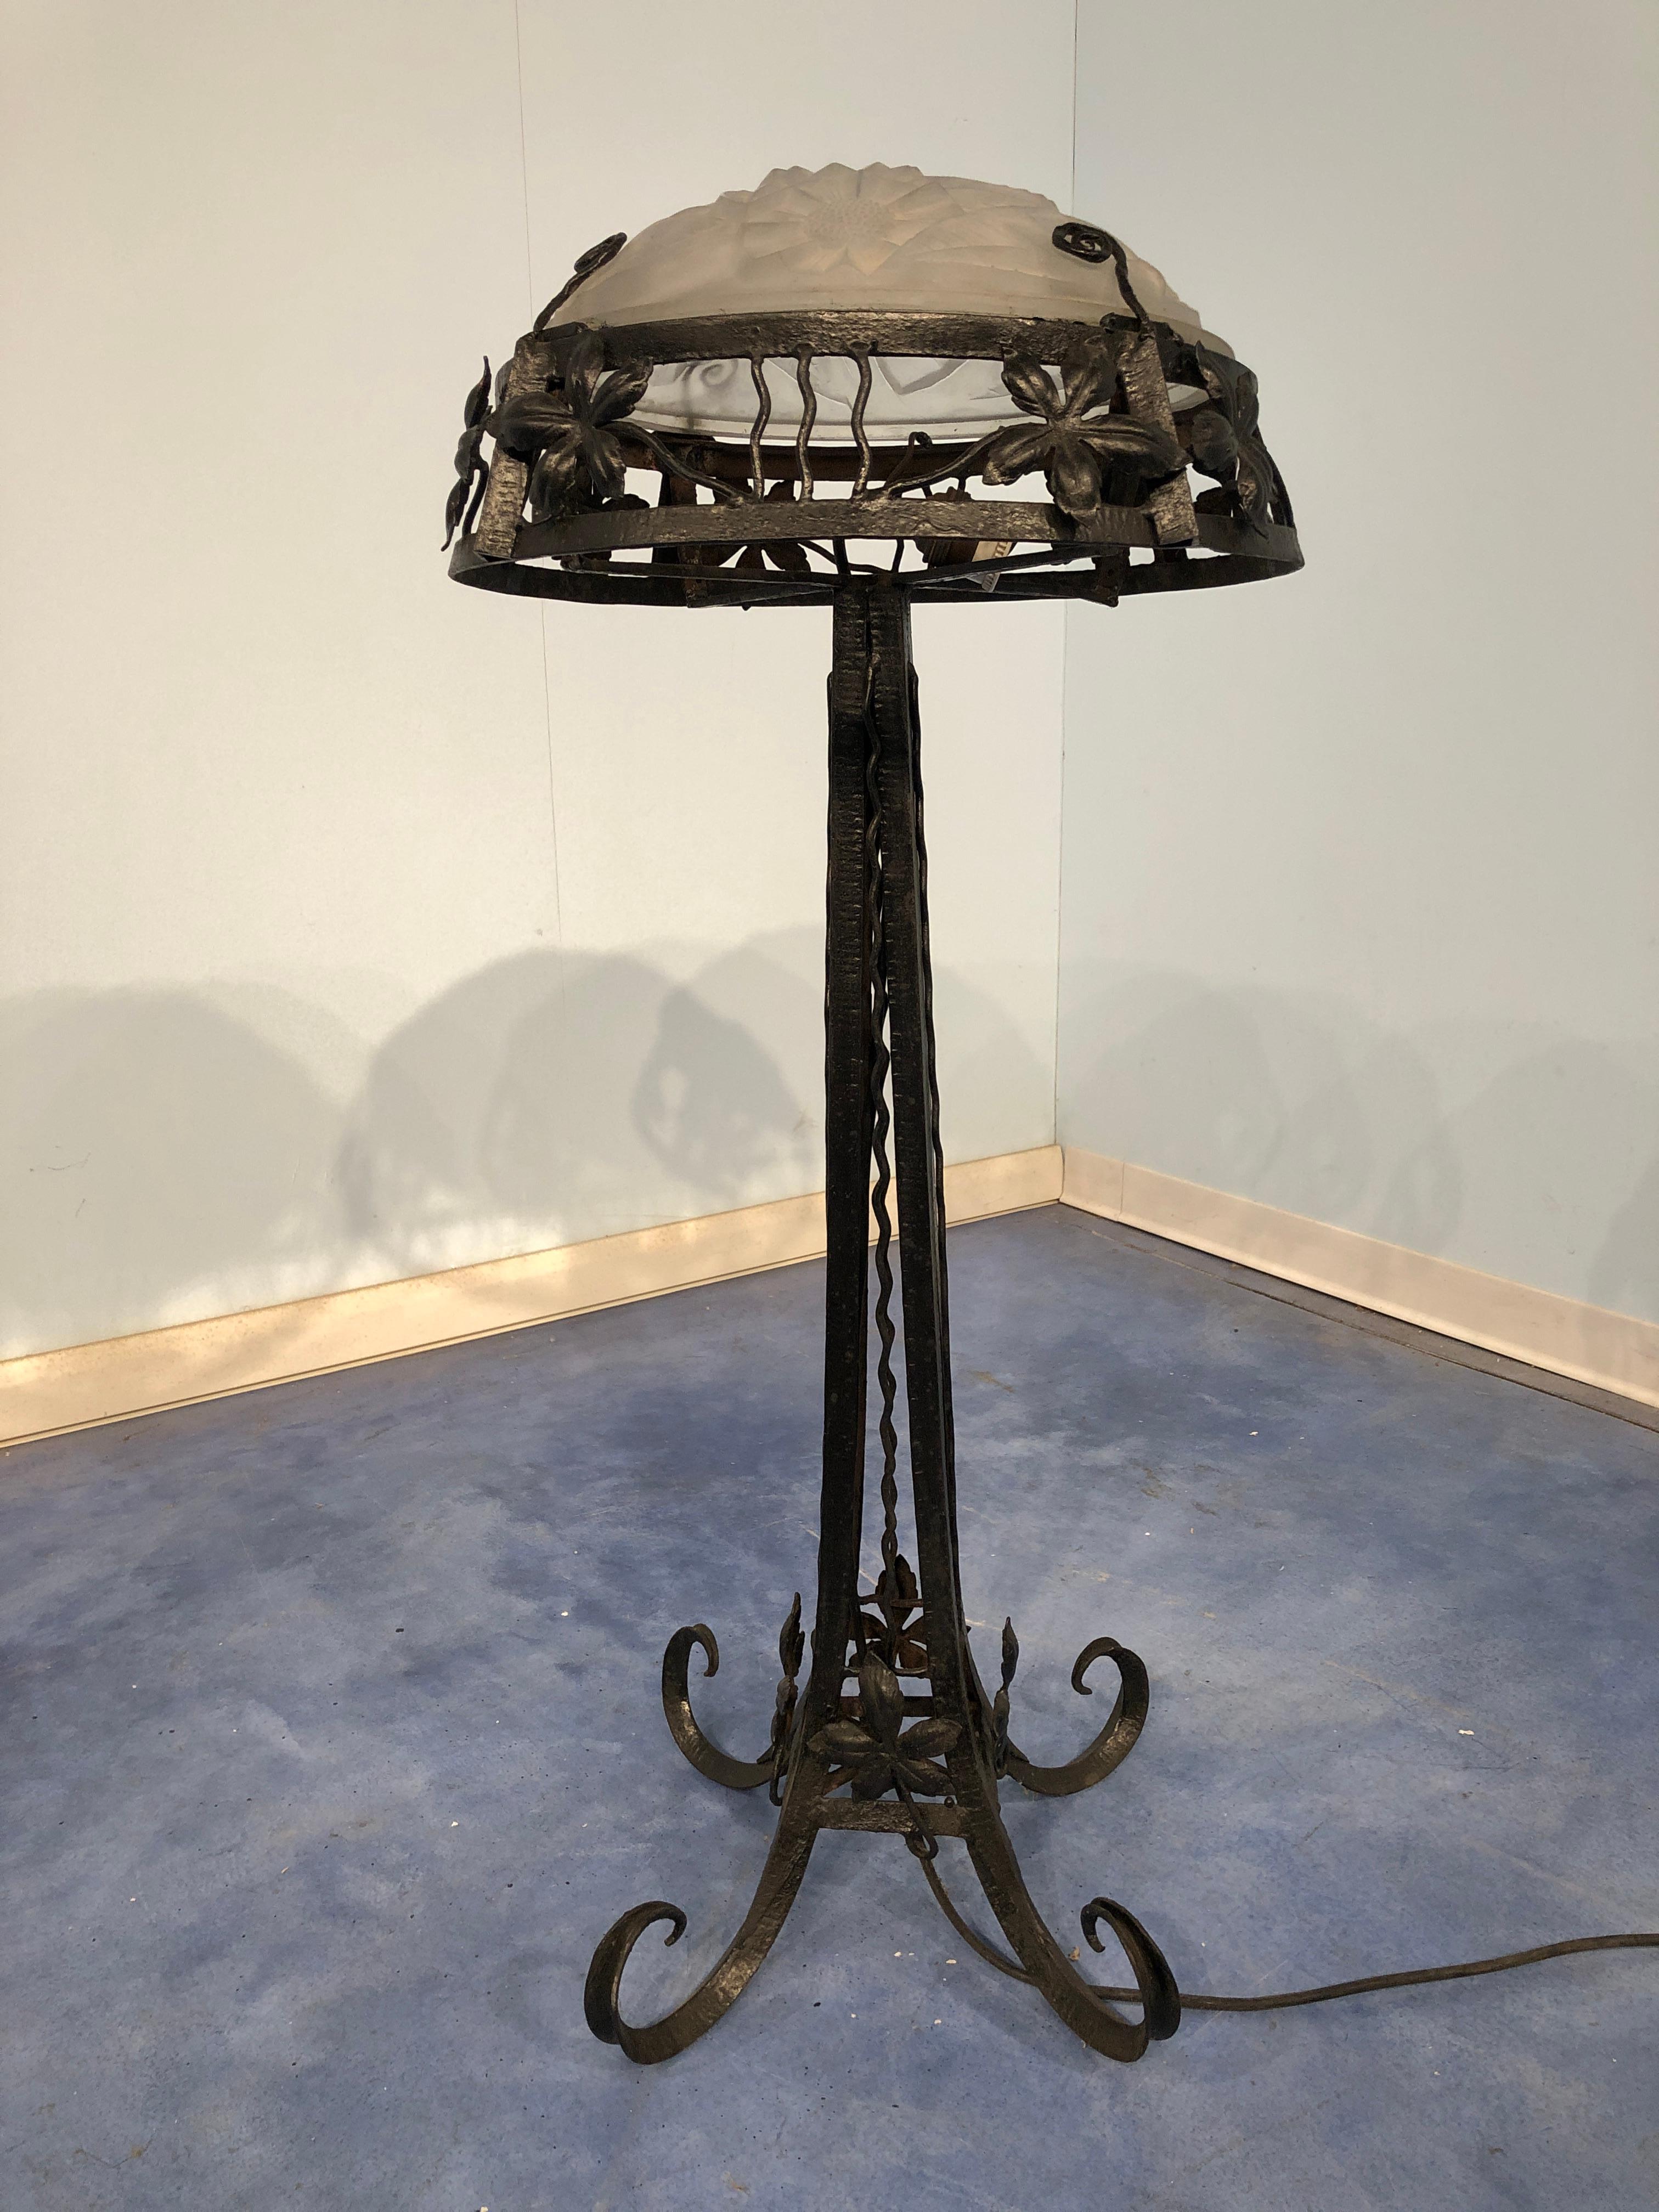 Belle lampe art déco française en épais abat-jour en verre moulé au motif atypique et superbe base en fer forgé.
Signé par Degué (David Guéron), 1930.